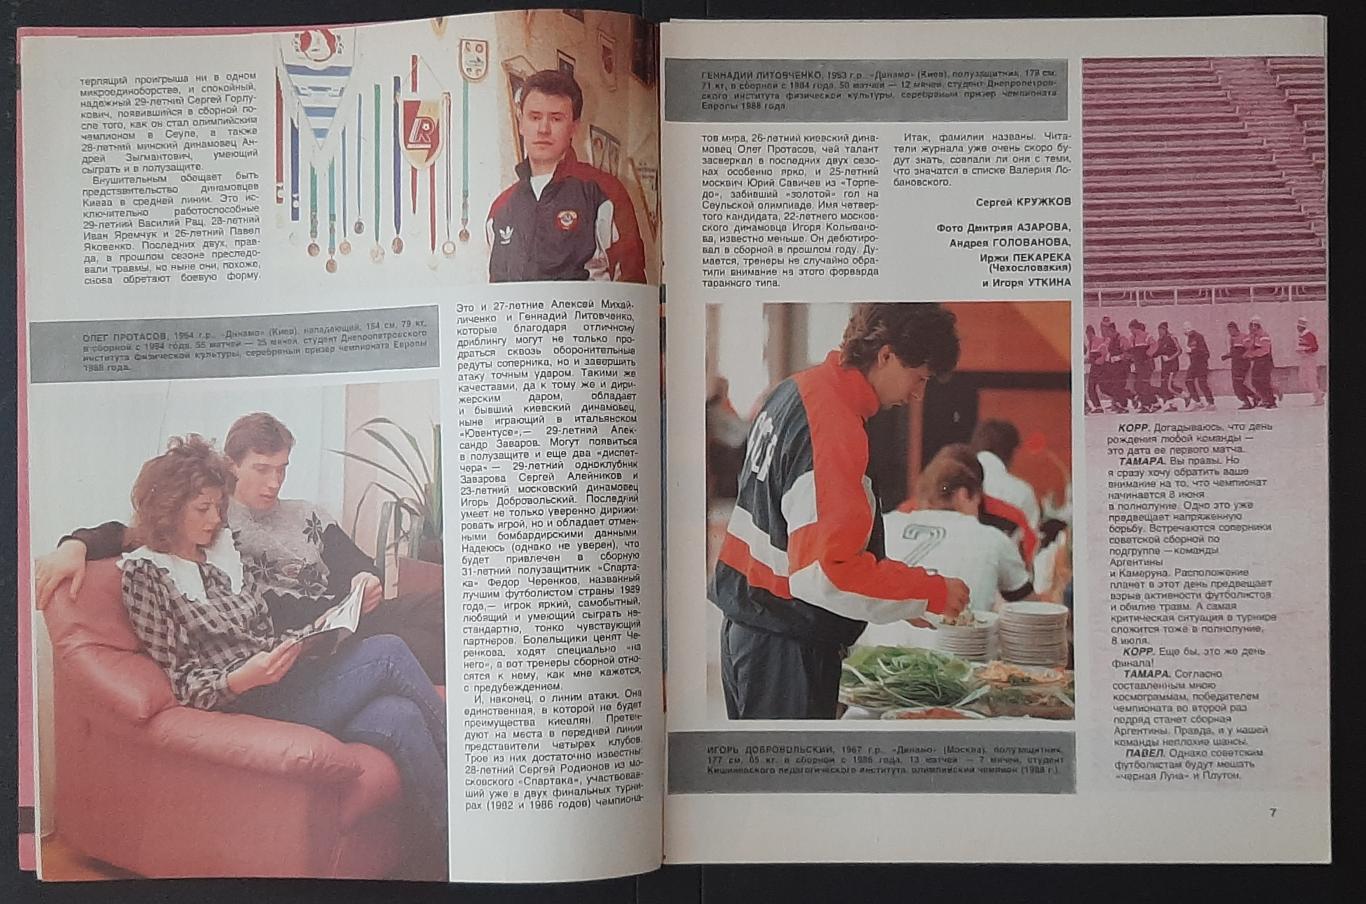 Журнал Спорт в СССР и в мире.#4 1990 3